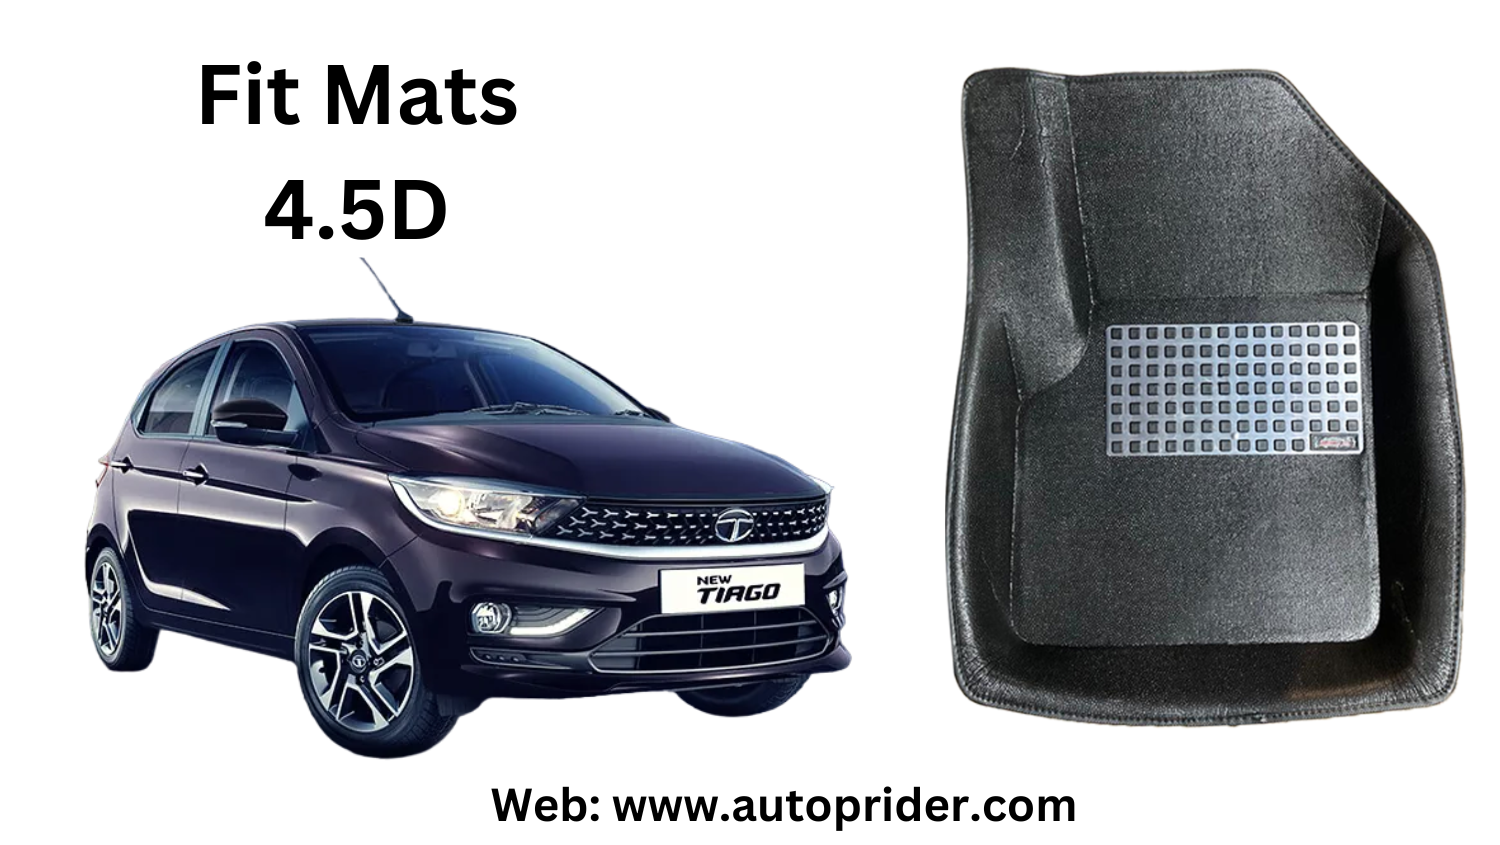 Autoprider | Fit Mats 4.5D Economy Car Mats for Tata Tiago